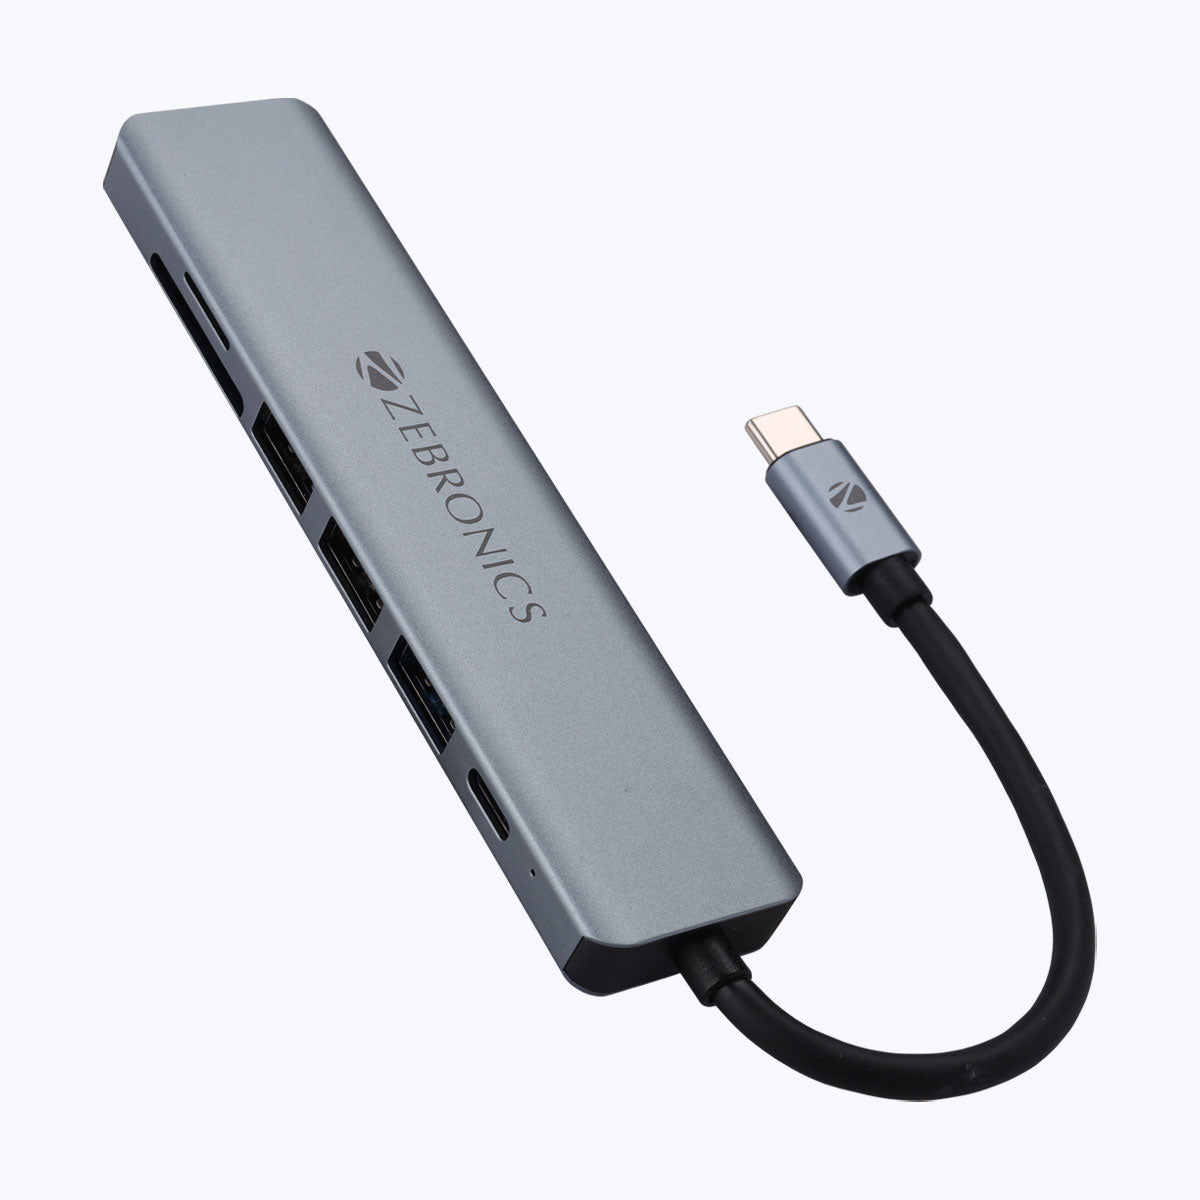 ADAPTADOR MICRO SD A USB 2.0 :: Serial Center